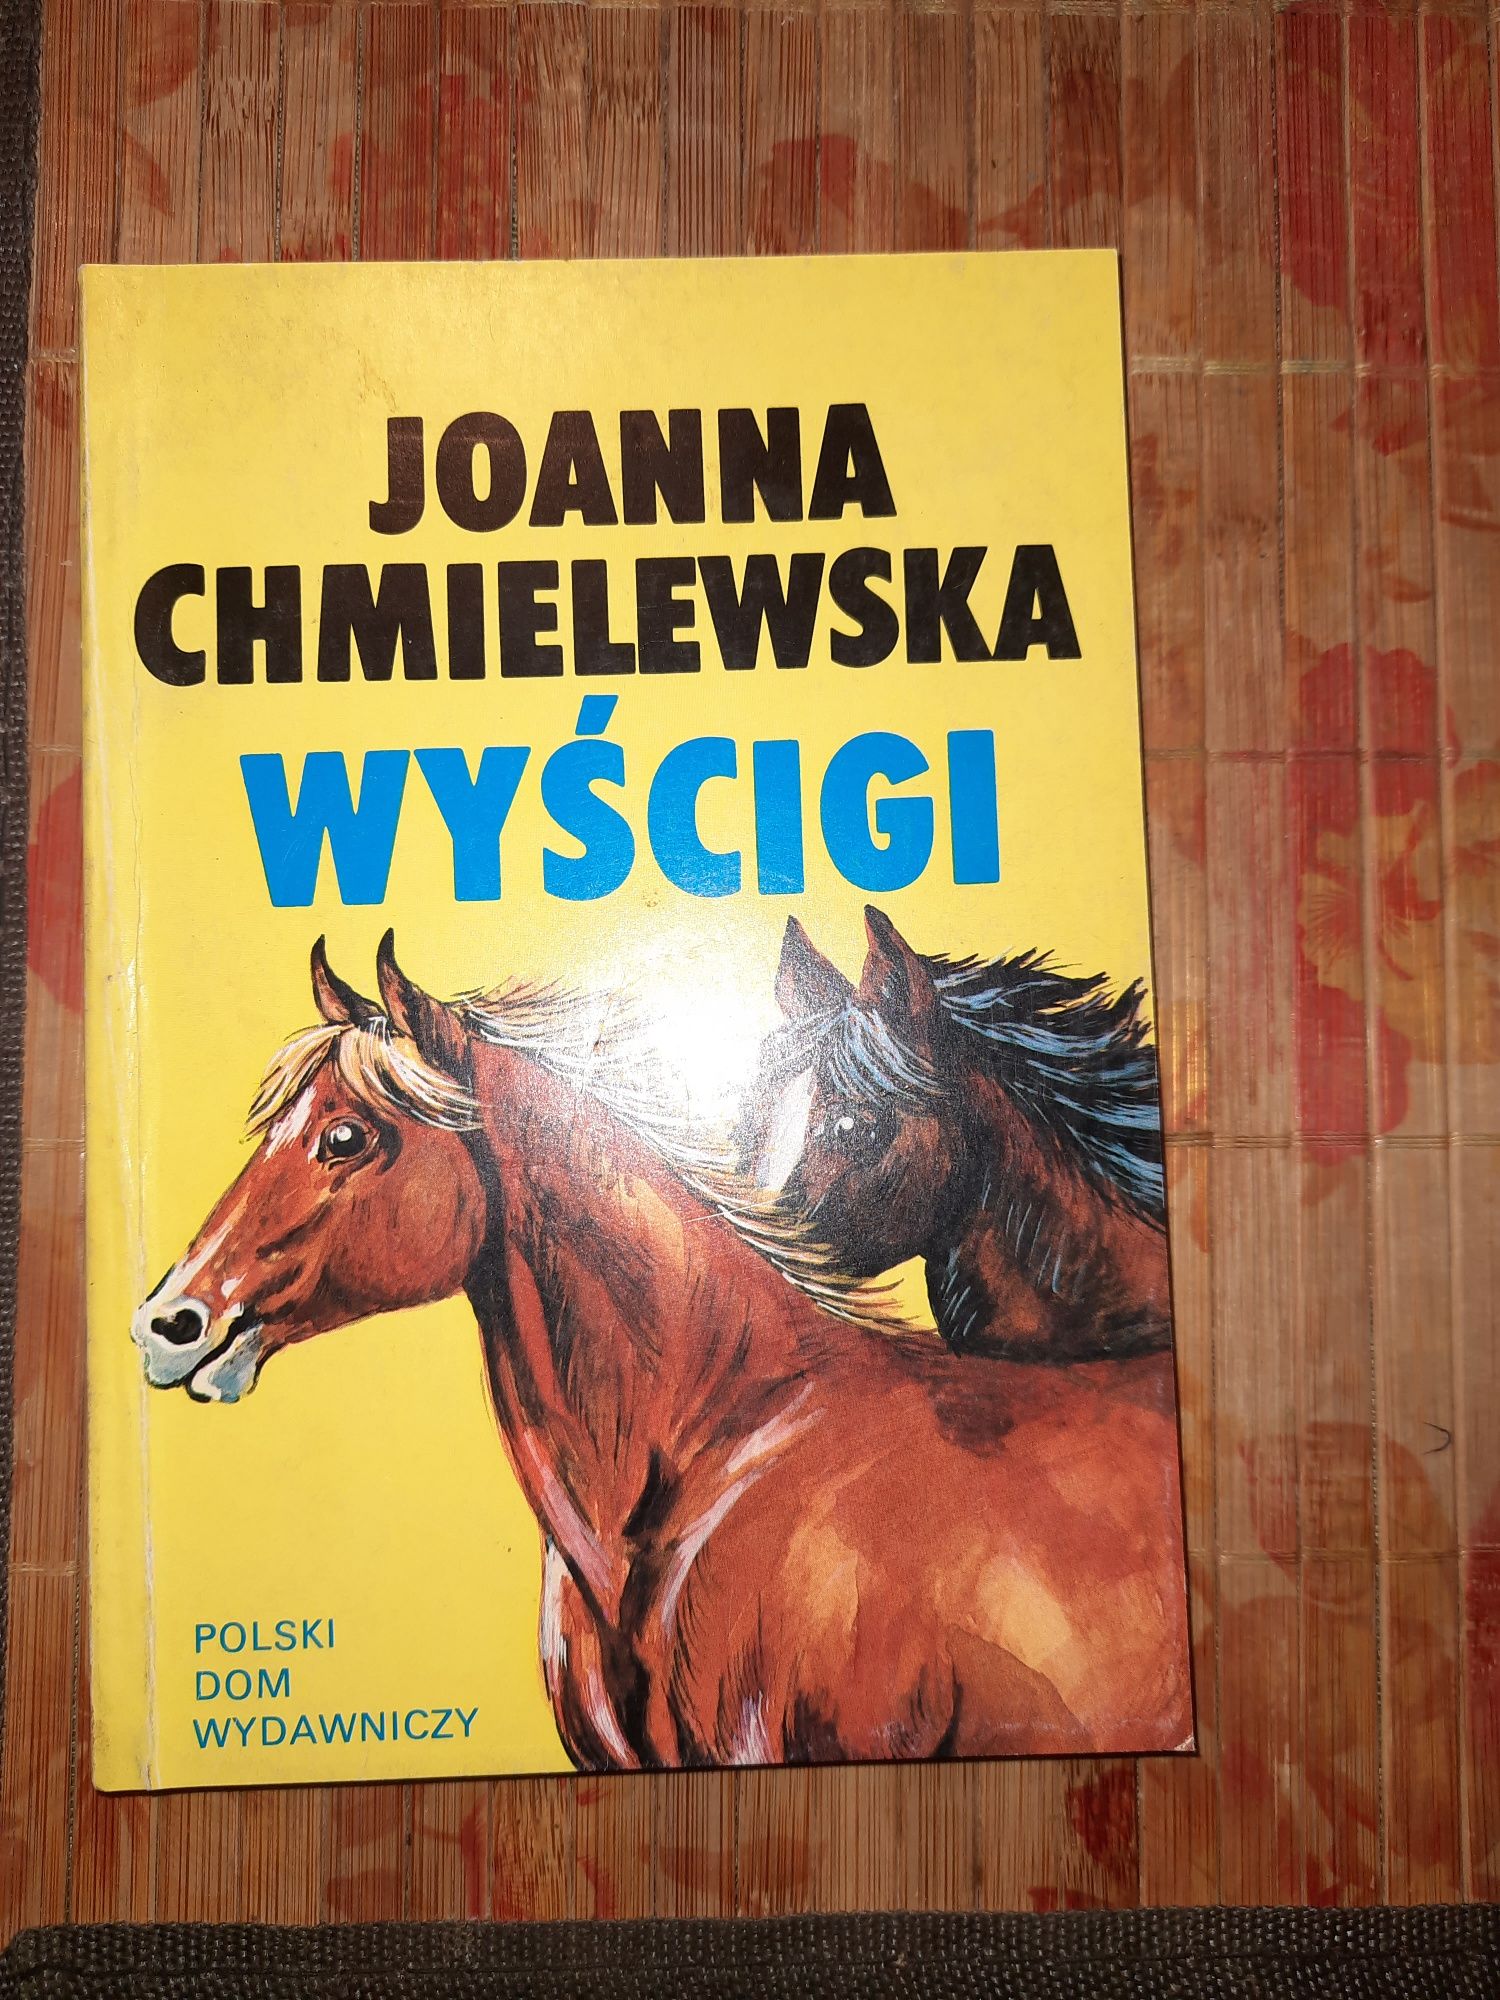 Joanna Chmielewska "Wyścigi"